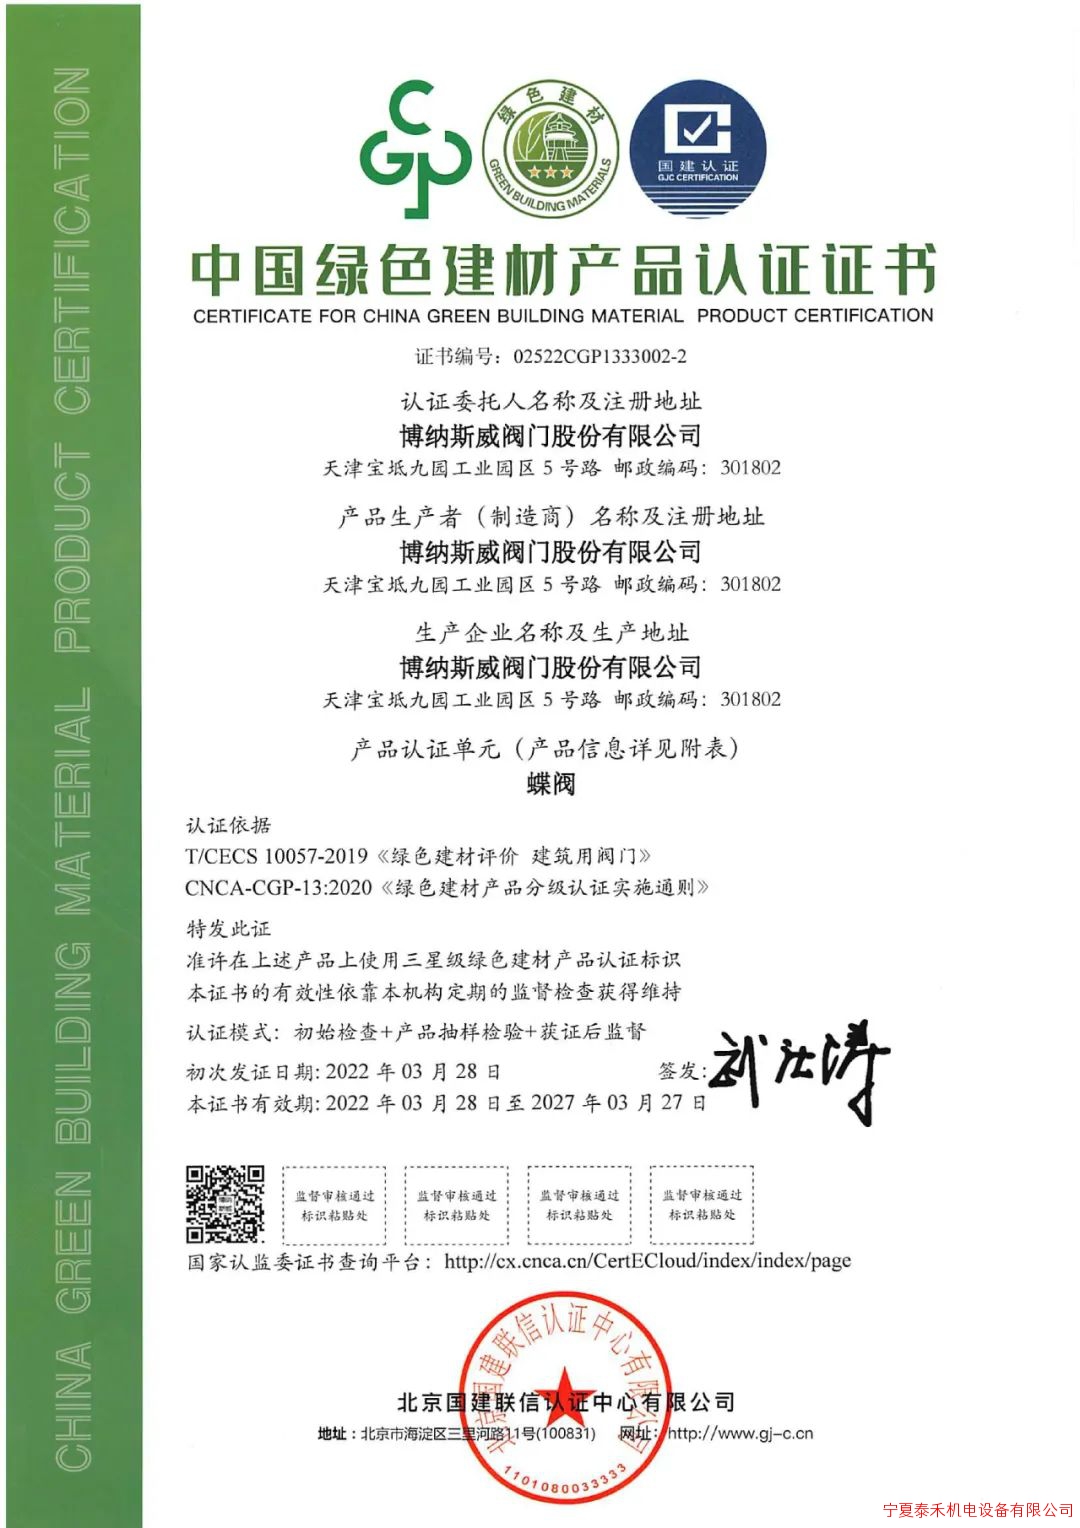 博纳斯威获得“中国绿色建材产品认证证书”